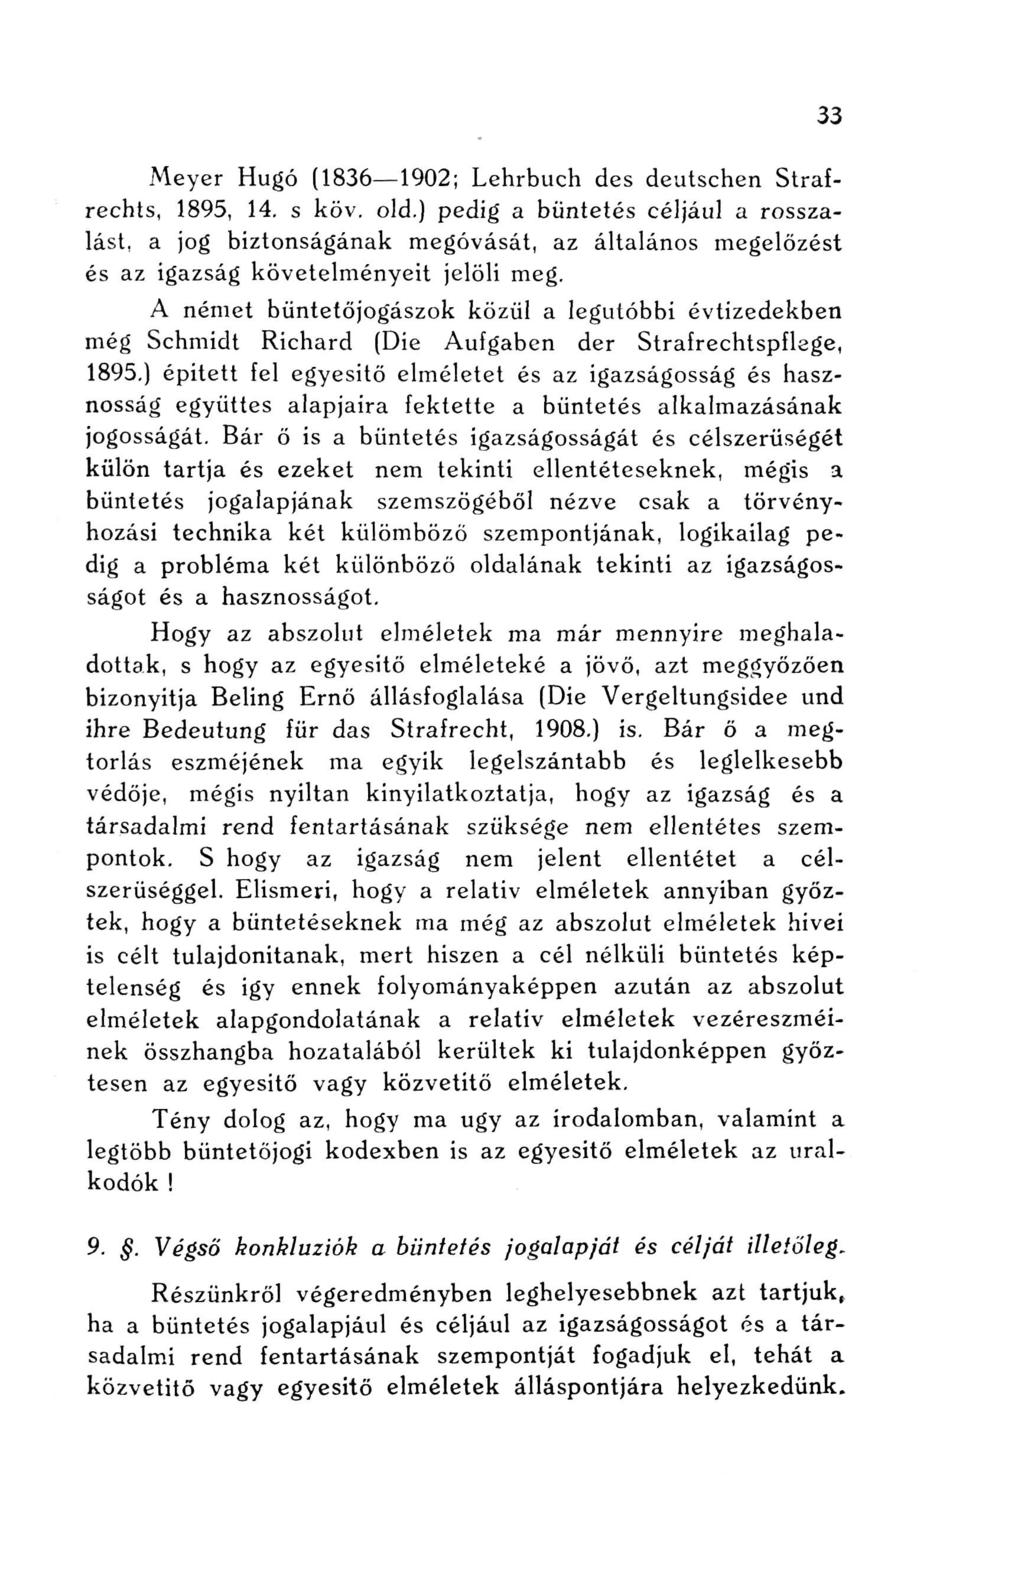 Meyer Hugó (1836 1902; Lehrbuch des deutschen Strafrechts, 1895, 14. s köv. old.